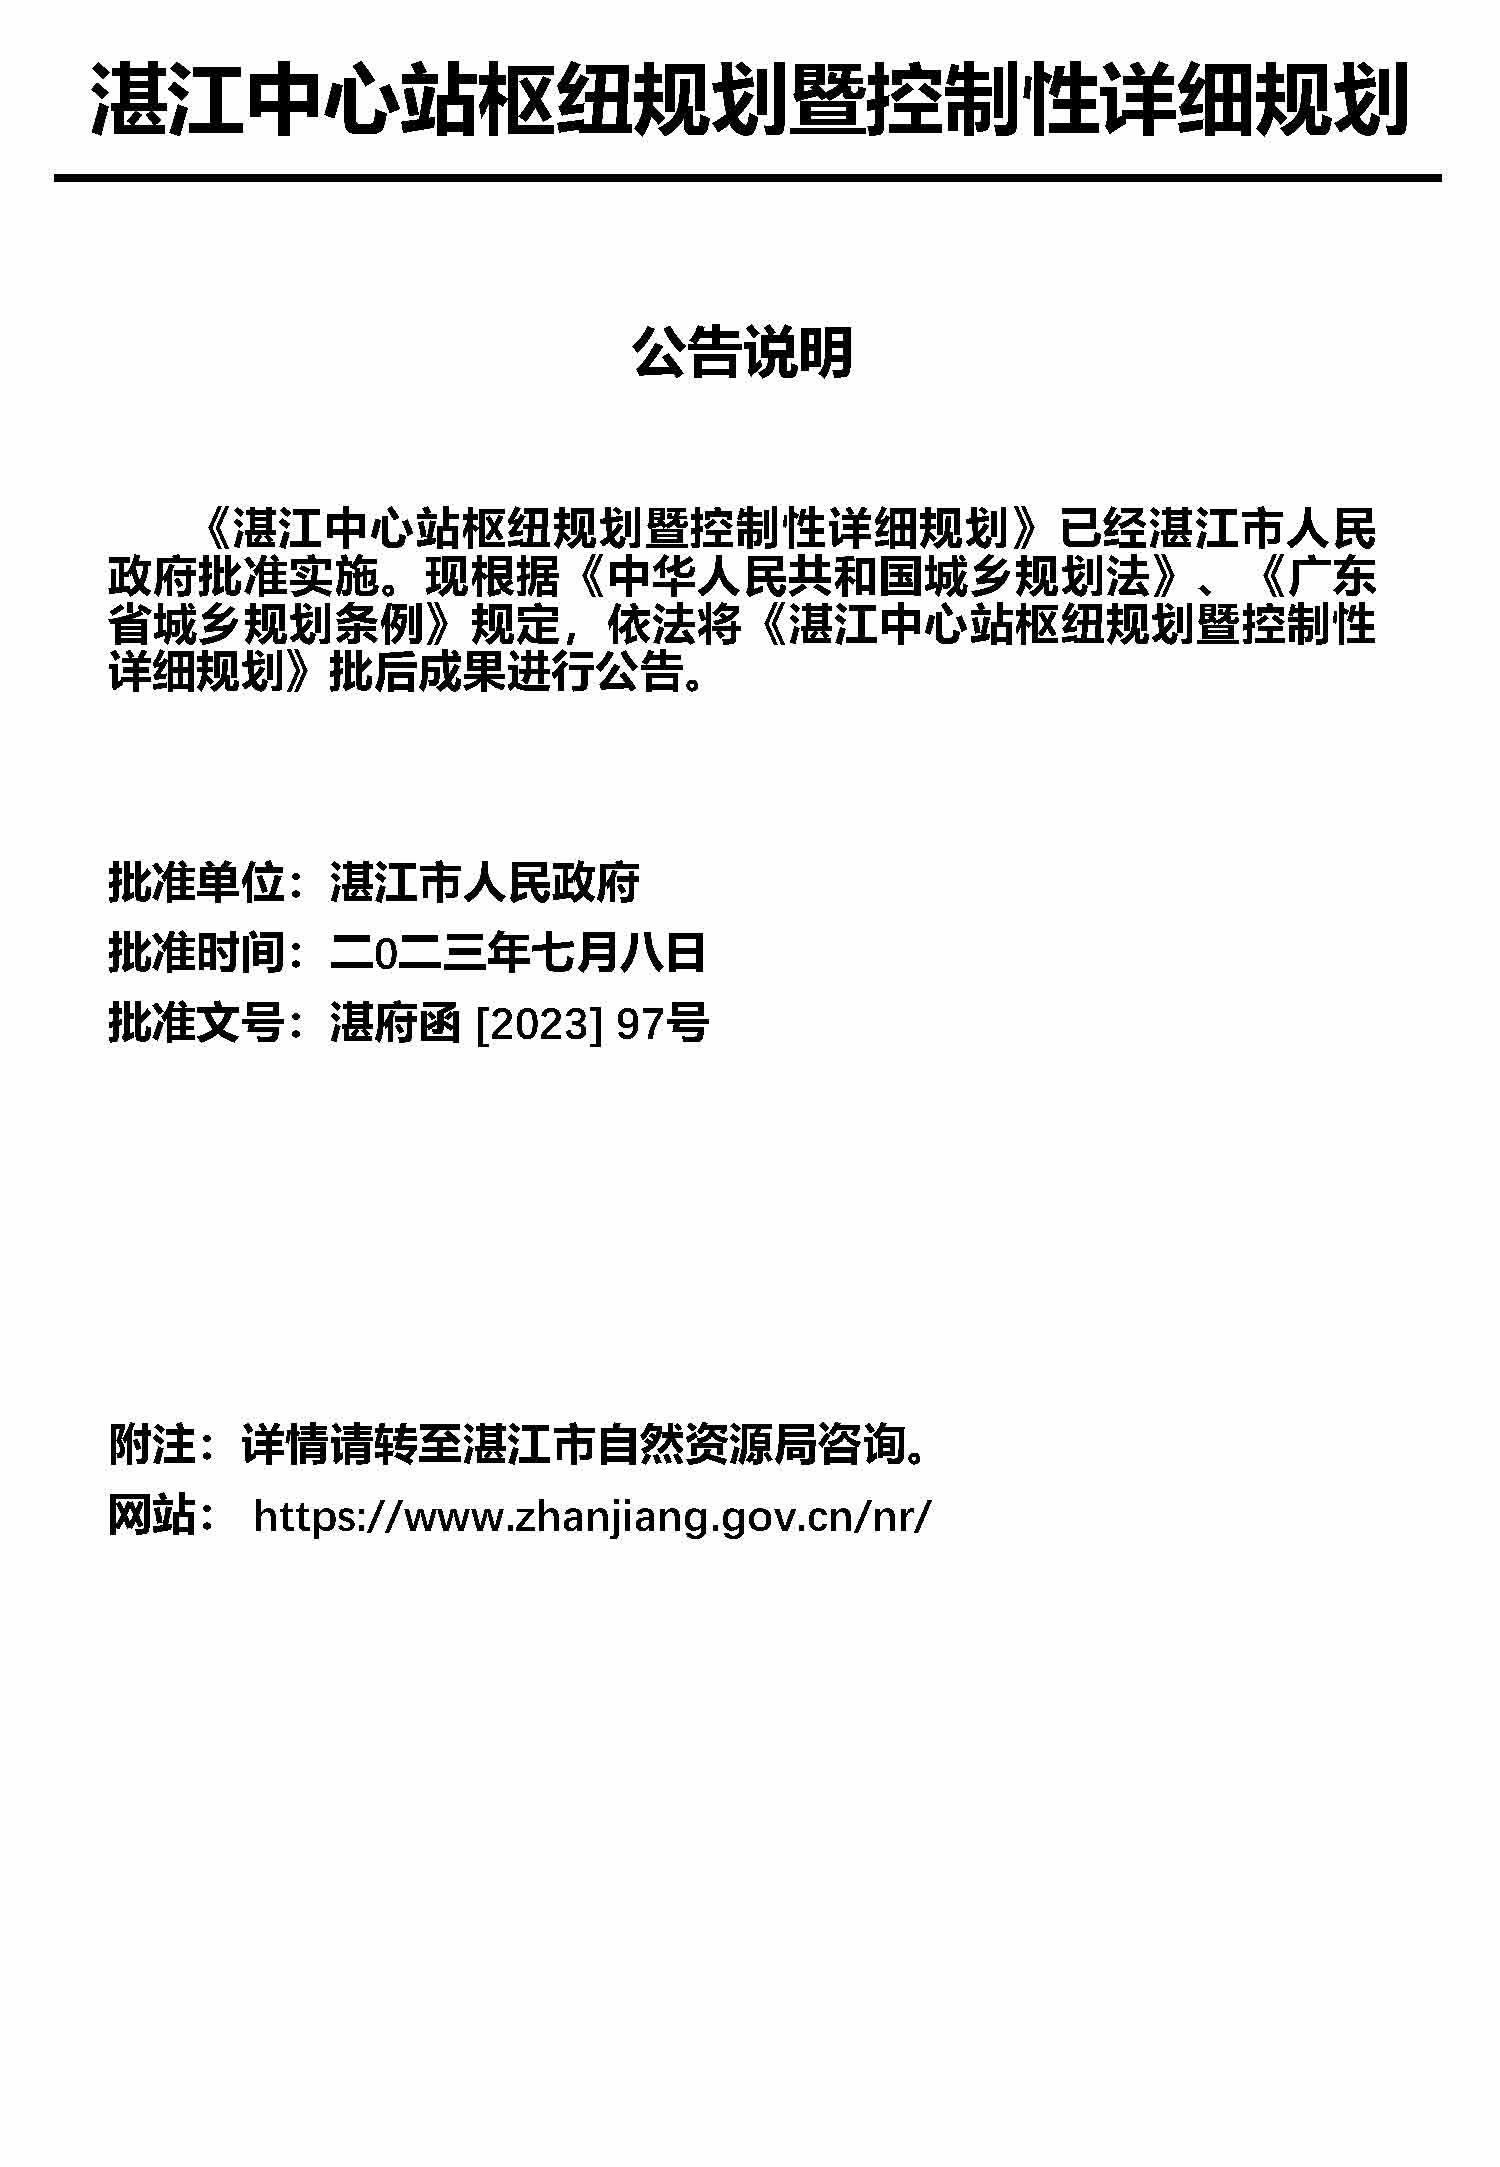 湛江市中心枢纽地区规划暨控制线详细规划报批后公告_页面_2.jpg